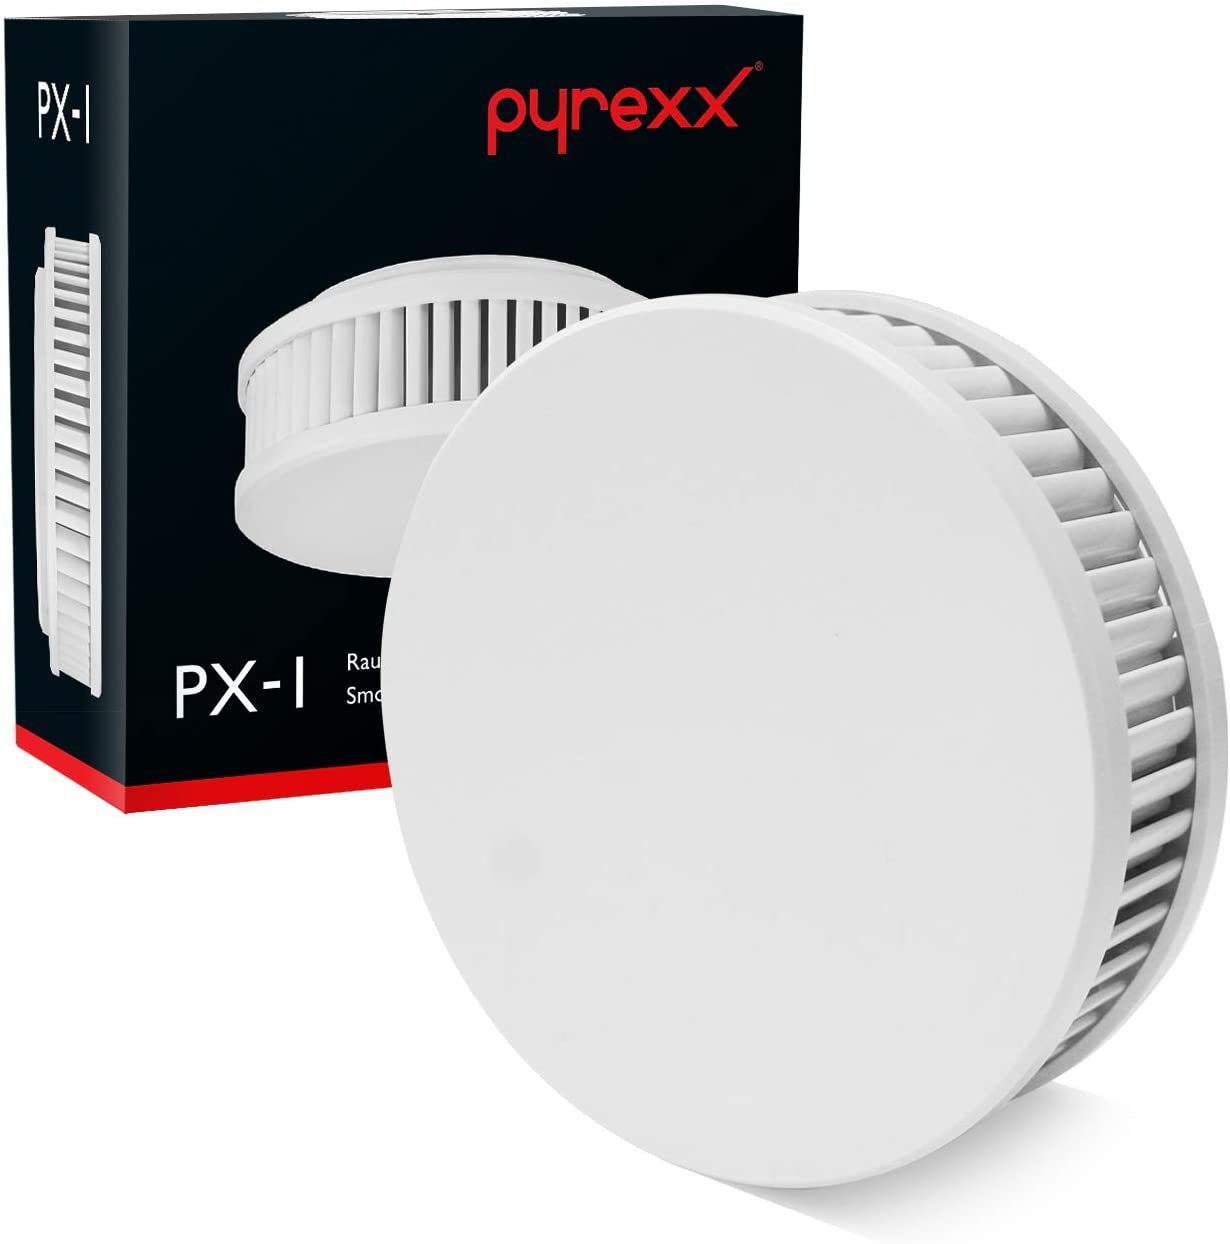 Pyrexx PX-1 Rauchwarnmelder Weiß - 9er Set Rauchmelder